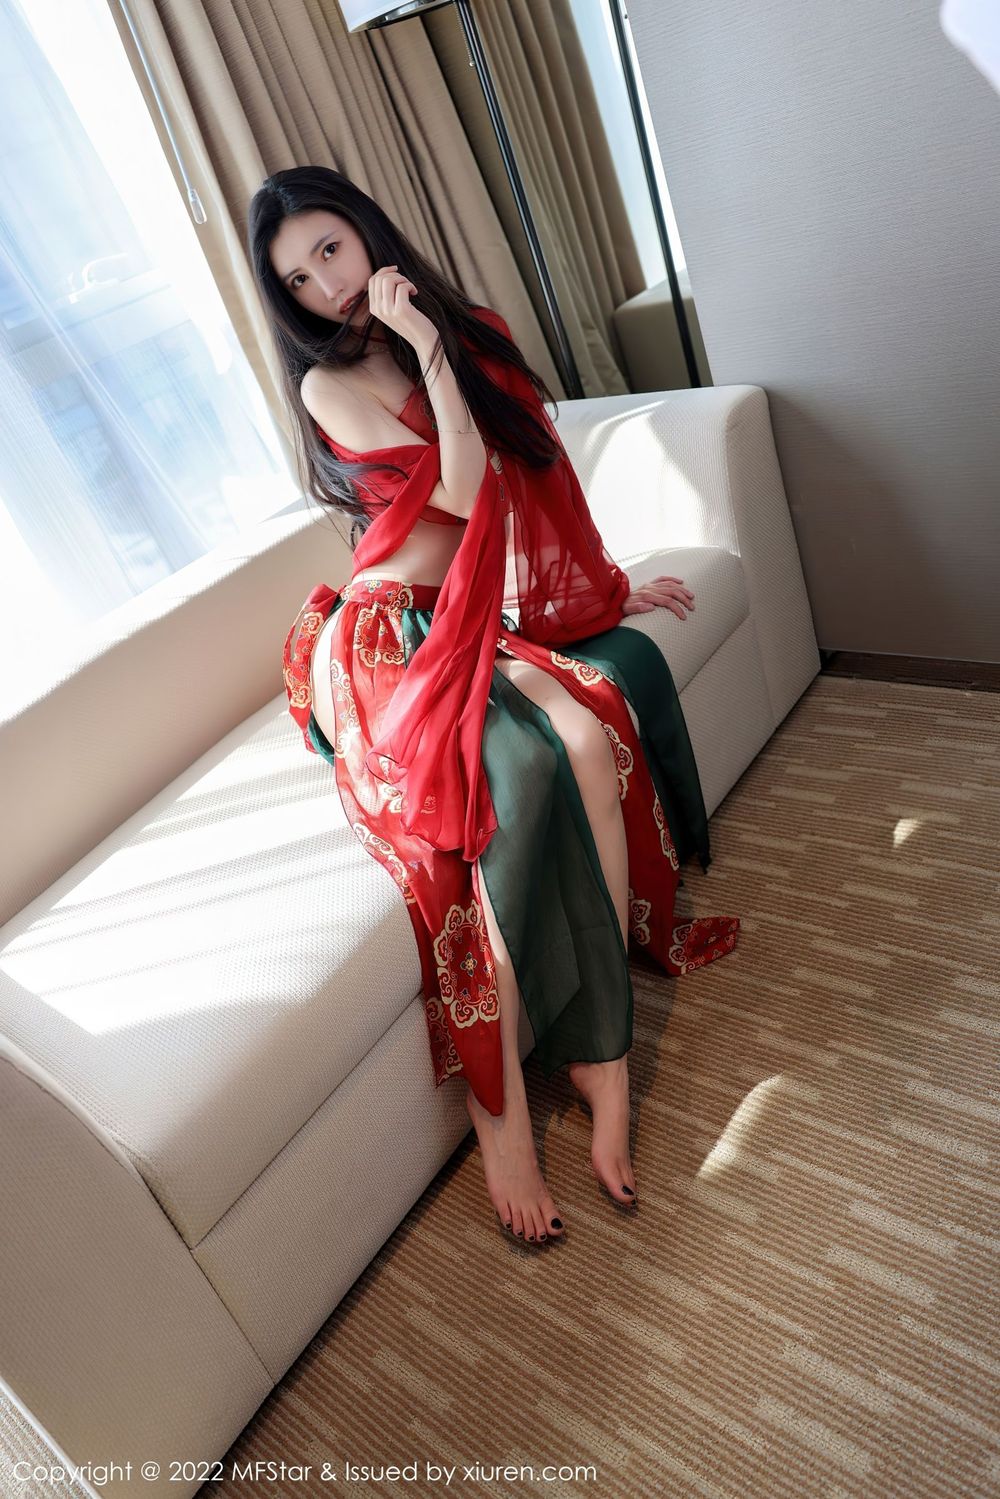 新人嫩模吴思晚 - 红色轻纱服饰+异域风情写真